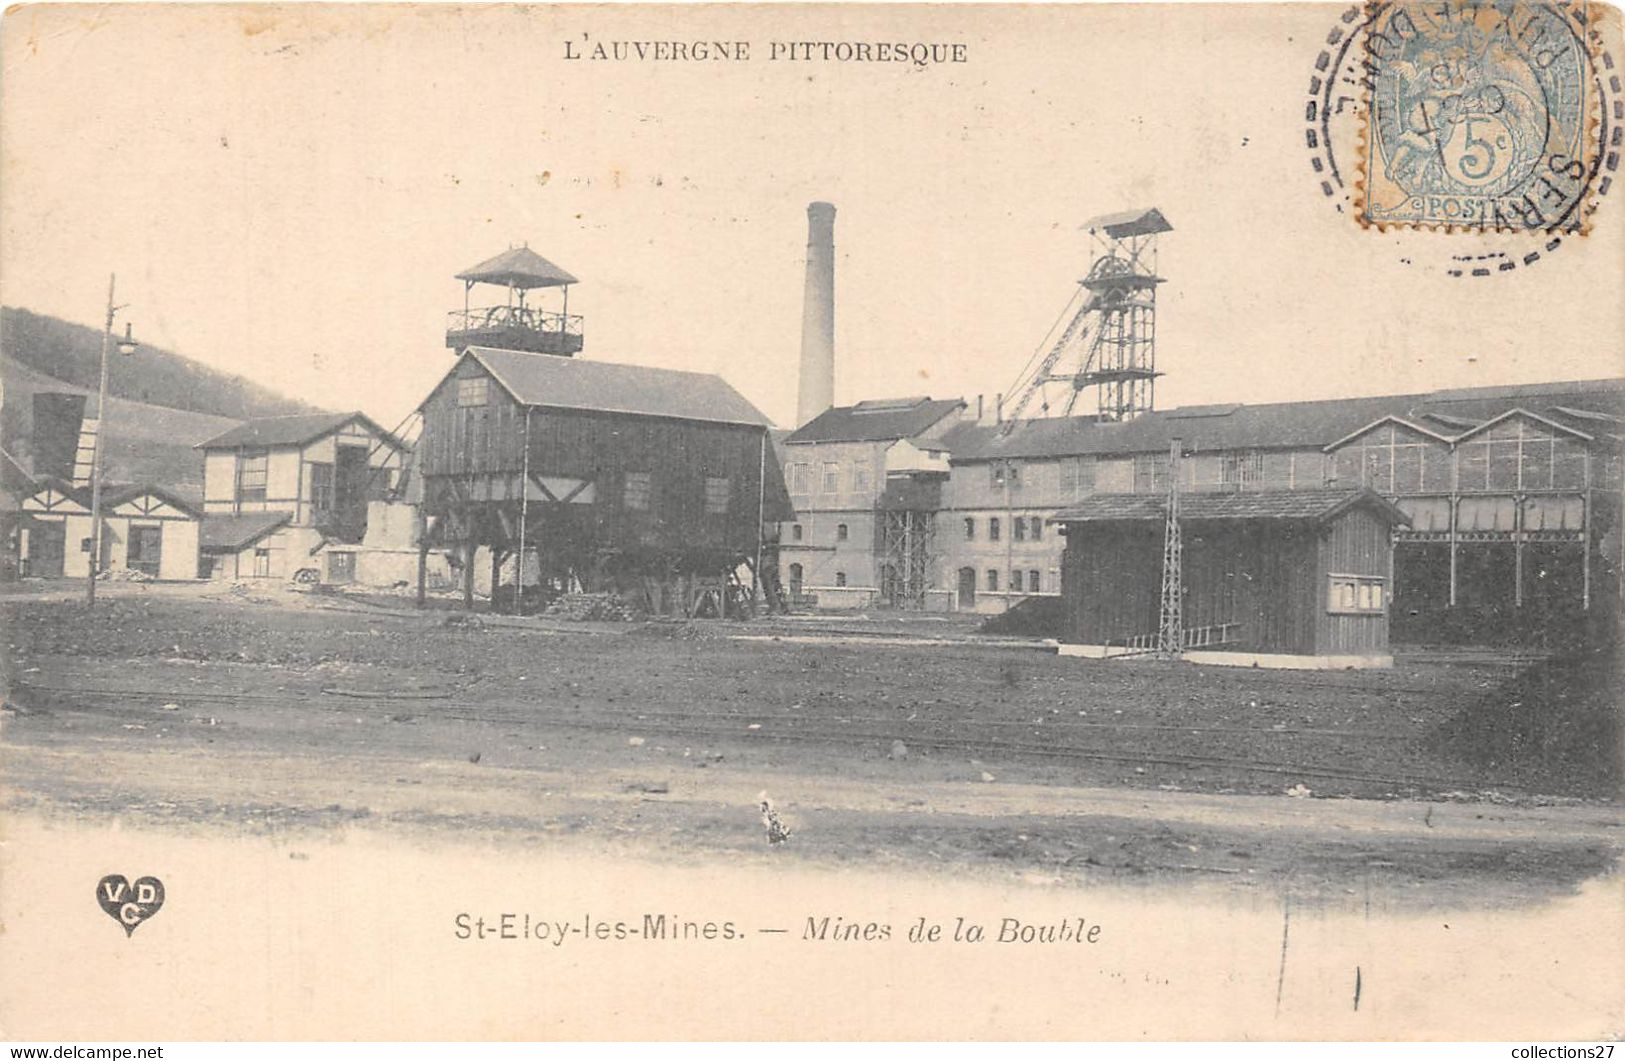 63-SAINT-ELOY-LES-MINES- MINES DE LA BOUBLE - Saint Eloy Les Mines